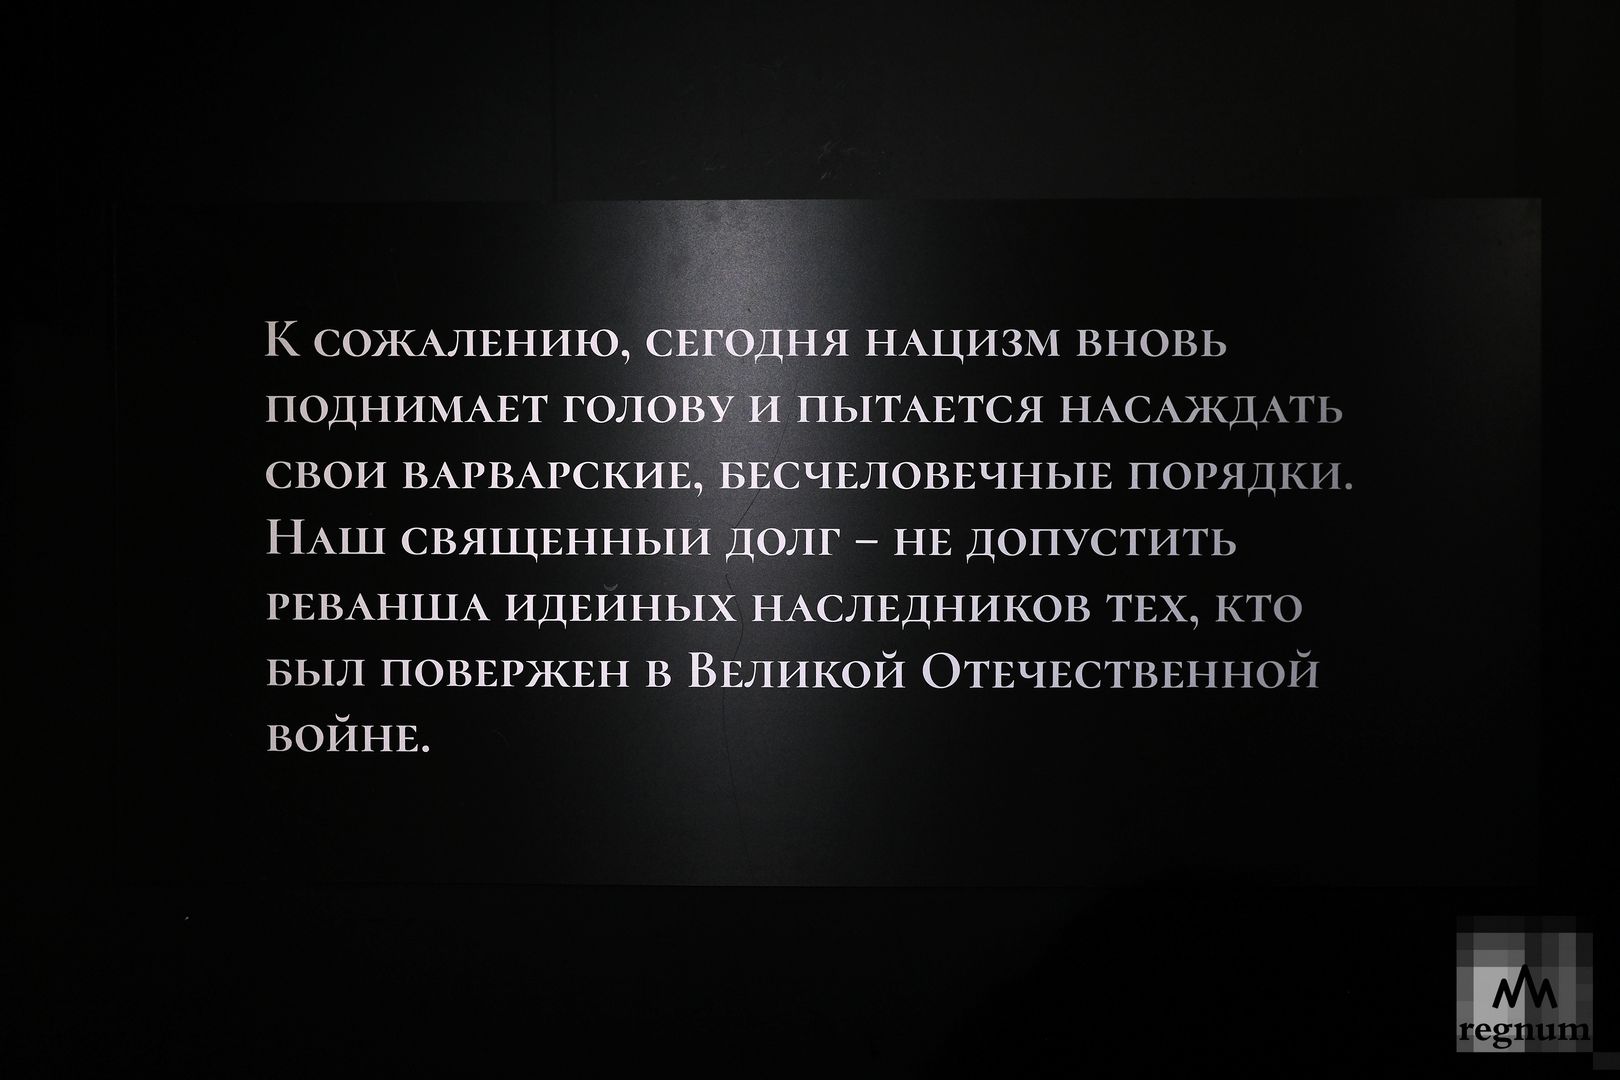 Новая часть экспозиции посвящена преступлениям неонацистов на территории Донбасса